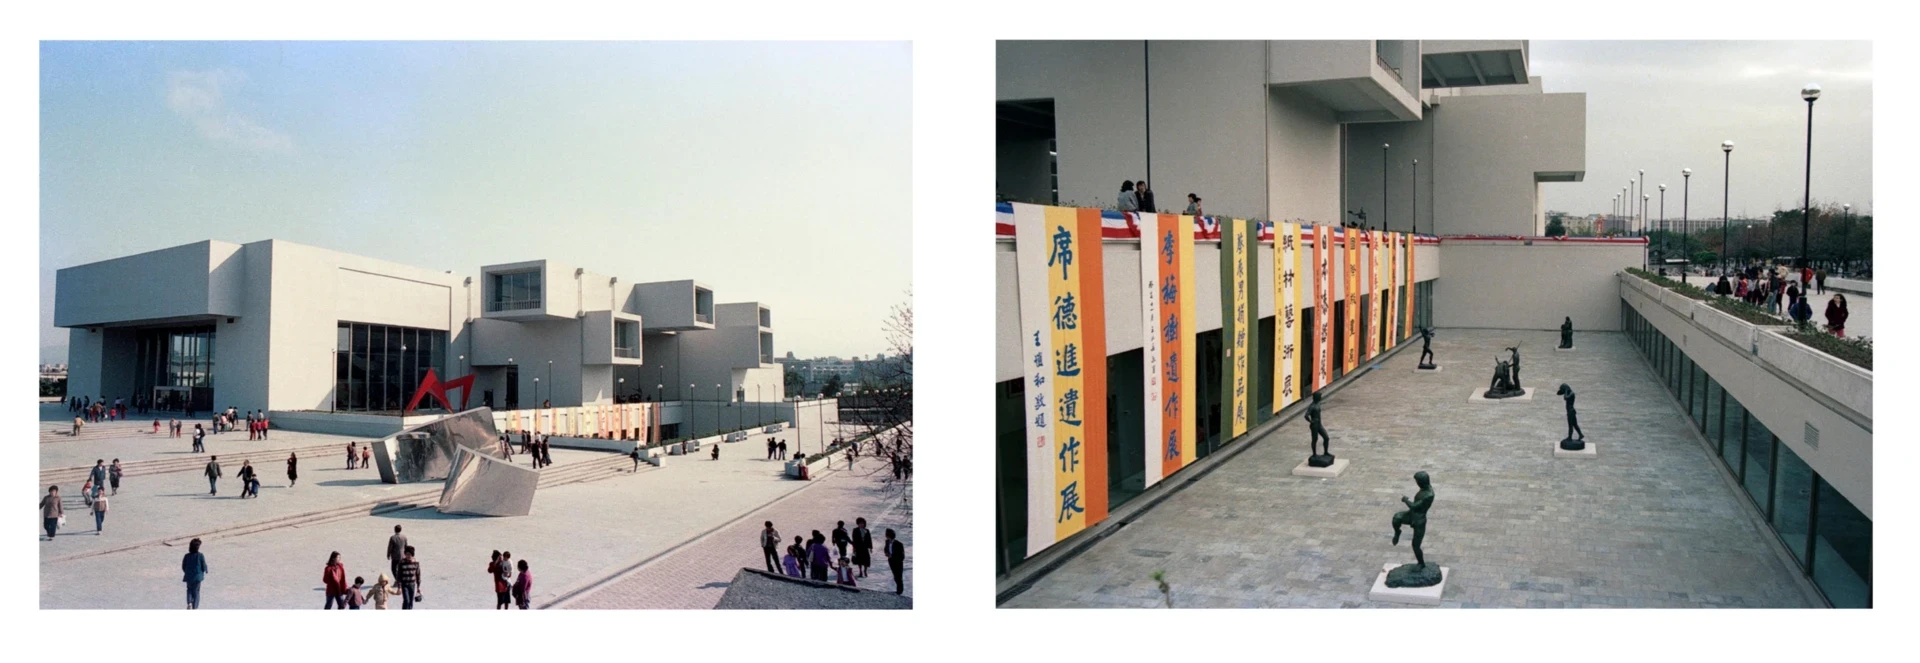 台北市立美術館開幕典禮暨十項特展揭幕一景，1983-圖片